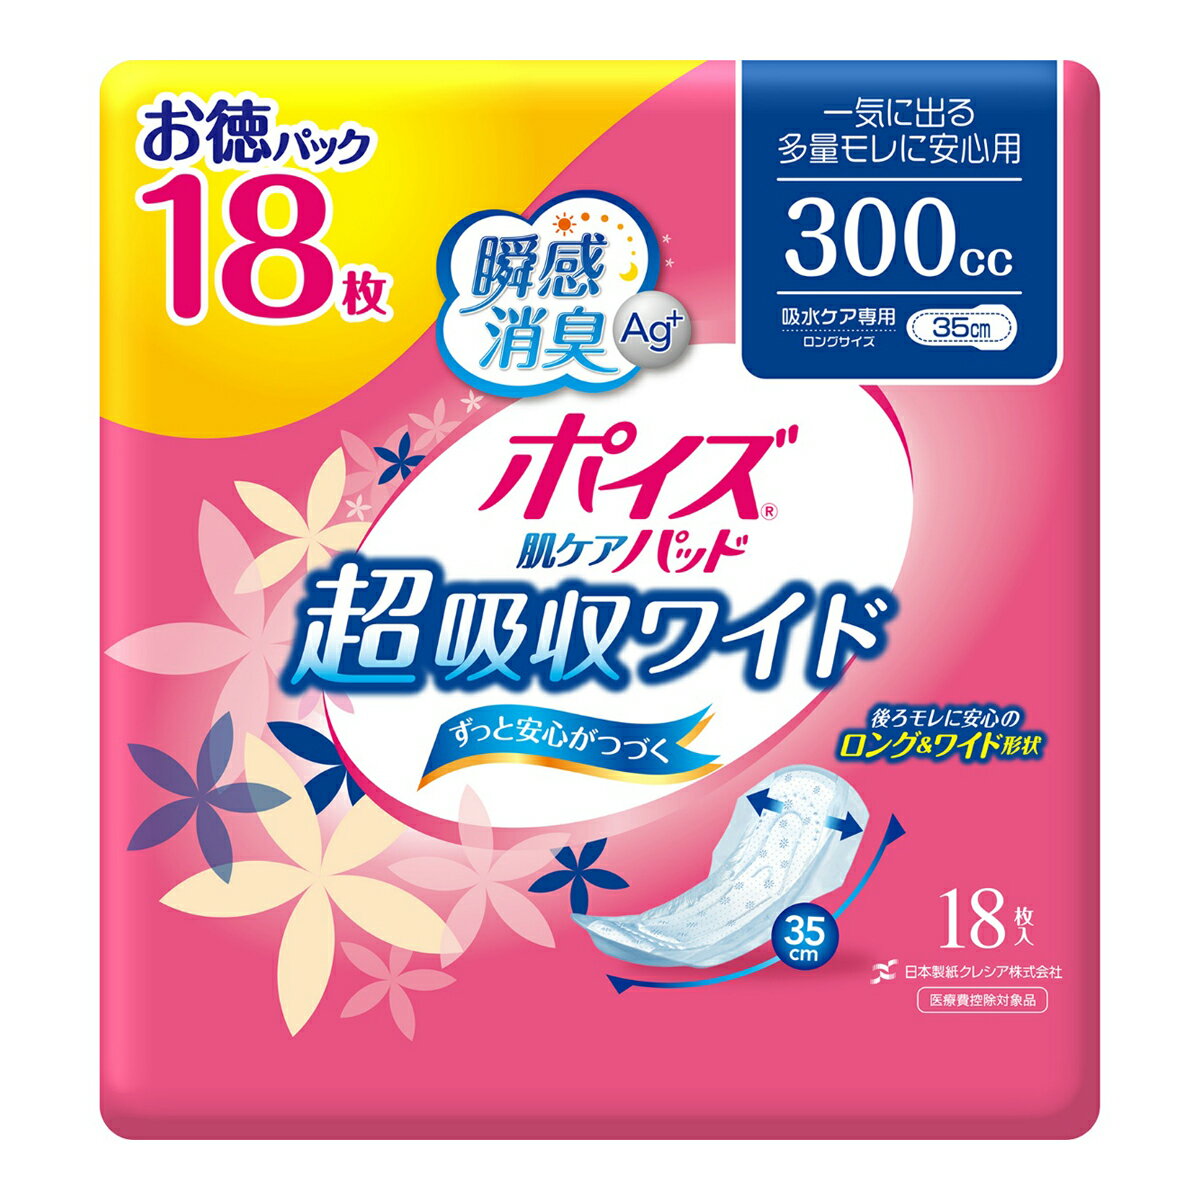 日本製紙クレシア ポイズ 肌ケアパッド 吸水ナプキン 超吸収ワイド 一気に出る多量モレに安心用 300cc 18枚入